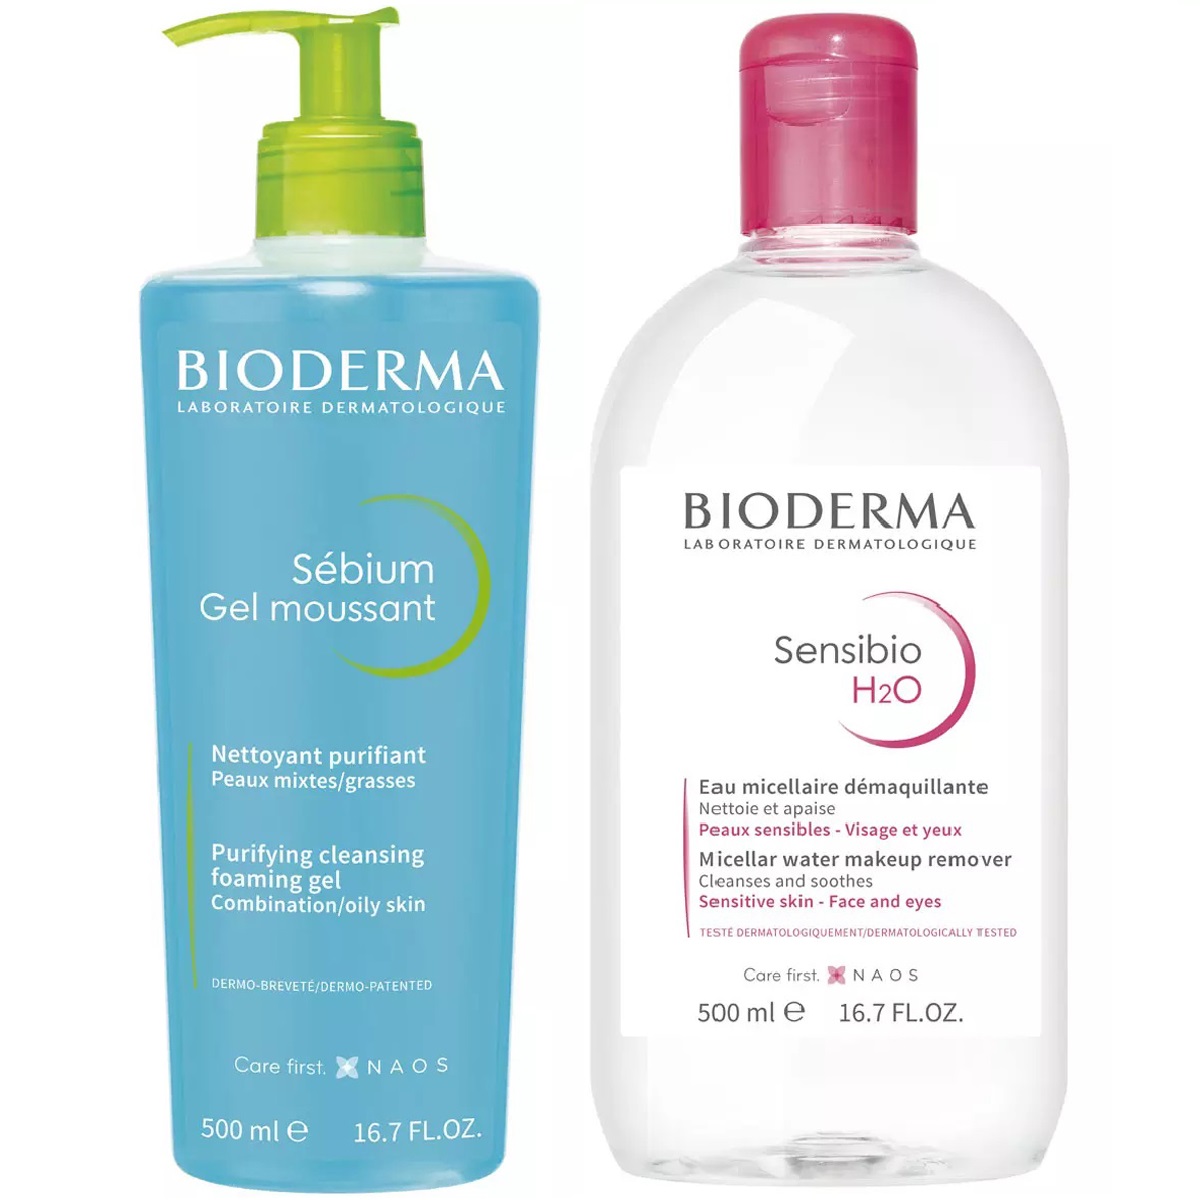 bioderma набор для ежедневного очищения кожи лосьон 250 мл мицеллярная вода 500 мл bioderma sensibio Bioderma Набор для очищения жирной кожи: гель, 500 мл + мицеллярная вода, 500 мл (Bioderma, Sebium)